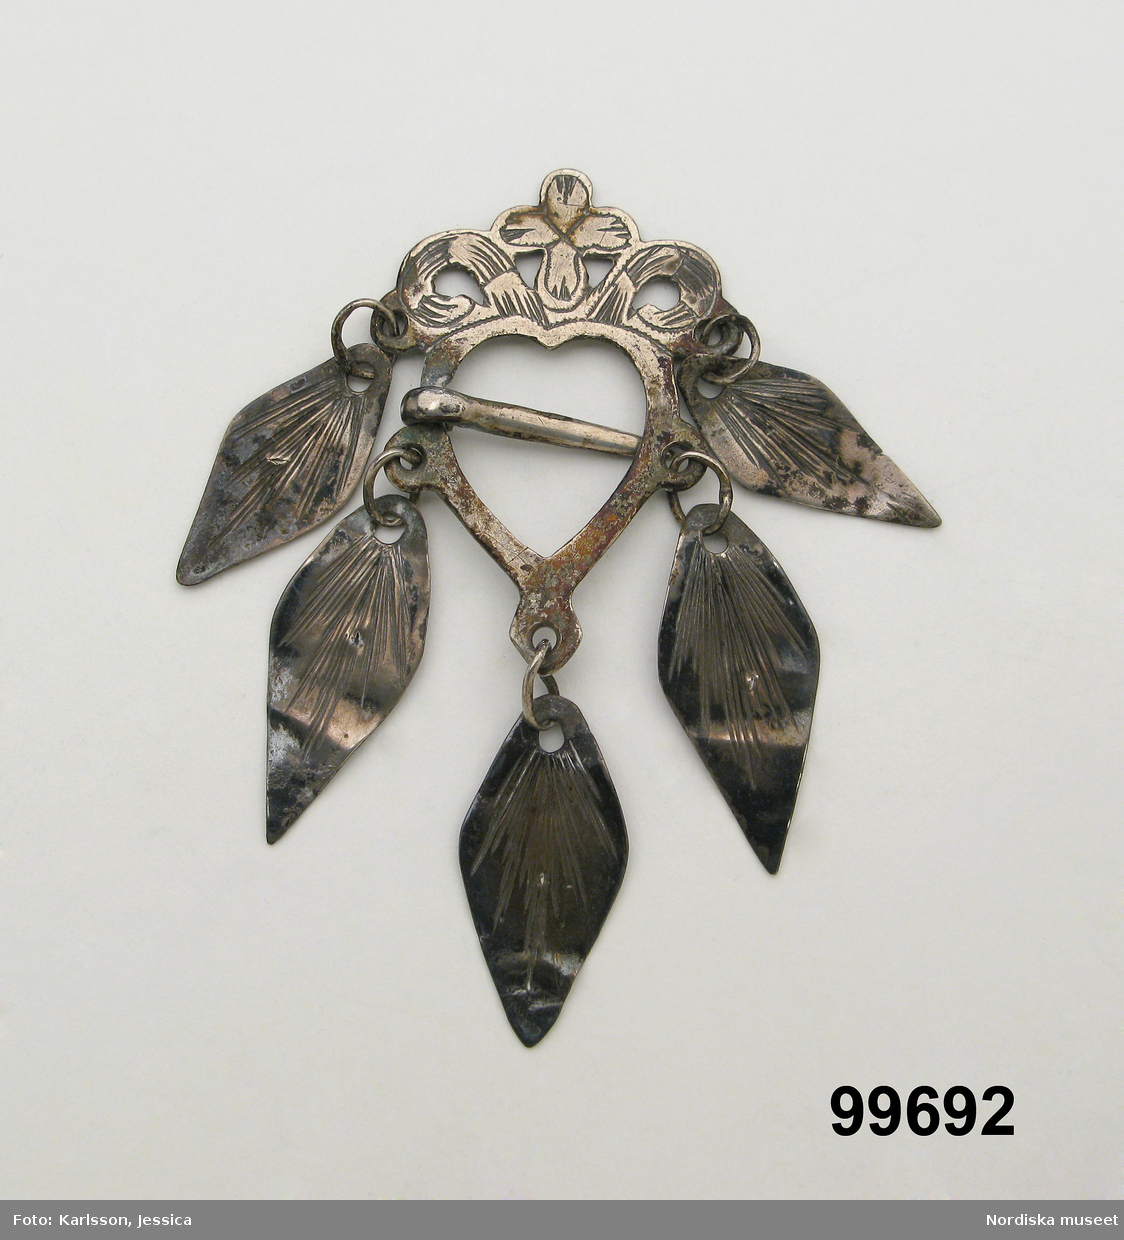 Hjärtformad sölja av silver med ornamenterat krön och 5 lövformade hängen, nål i mitten. Stämplar saknas.

Berit Eldvik maj 2006